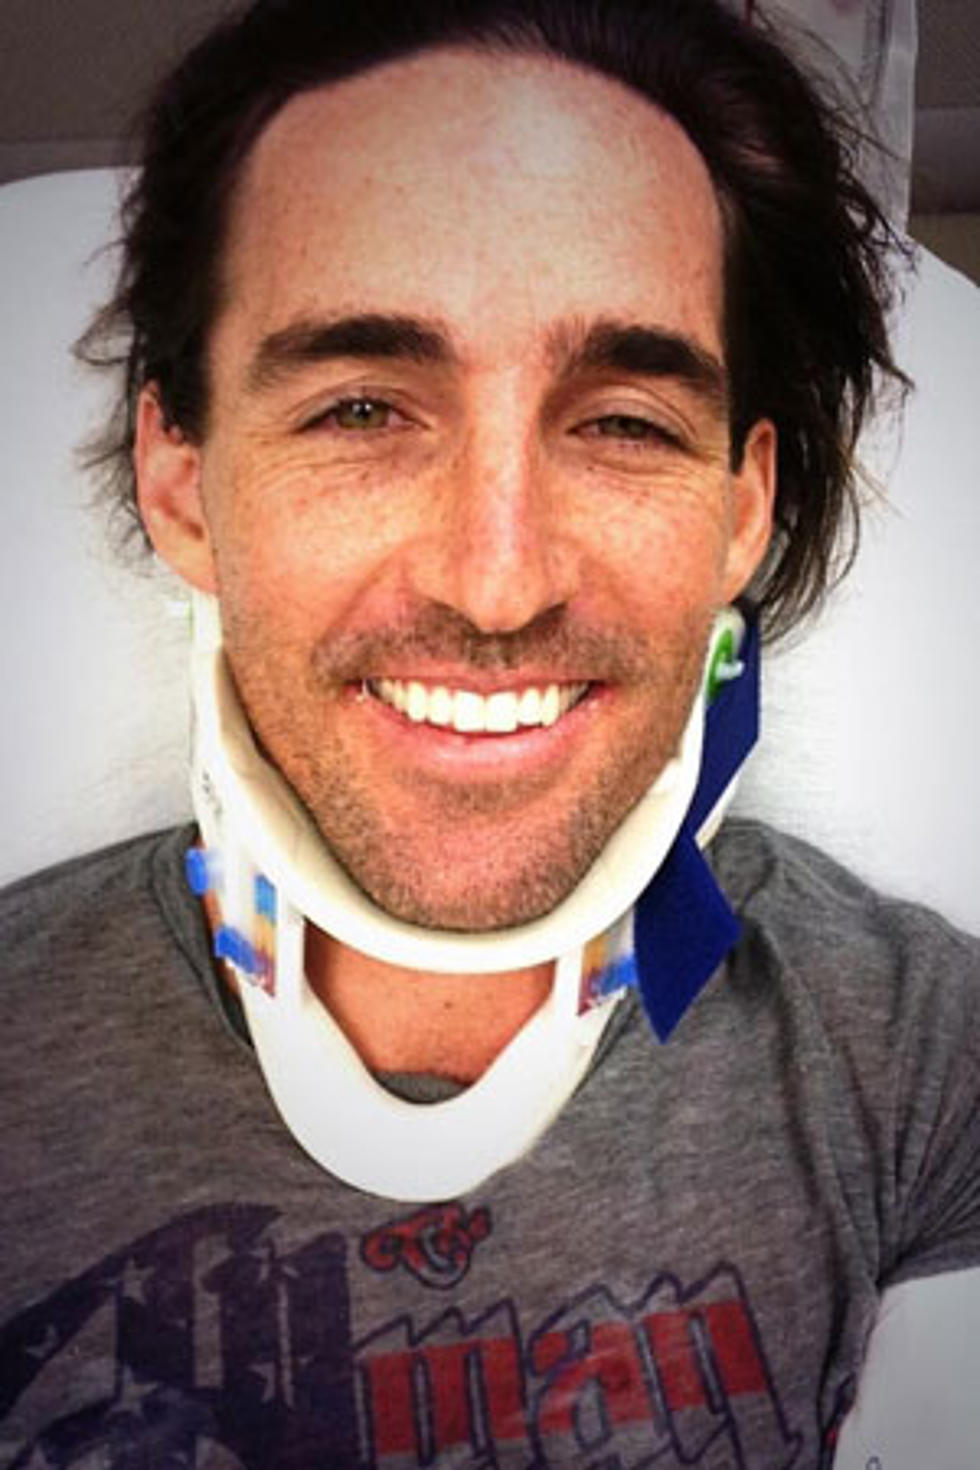 Jake Owen Hospitalized After Go-Kart Accident